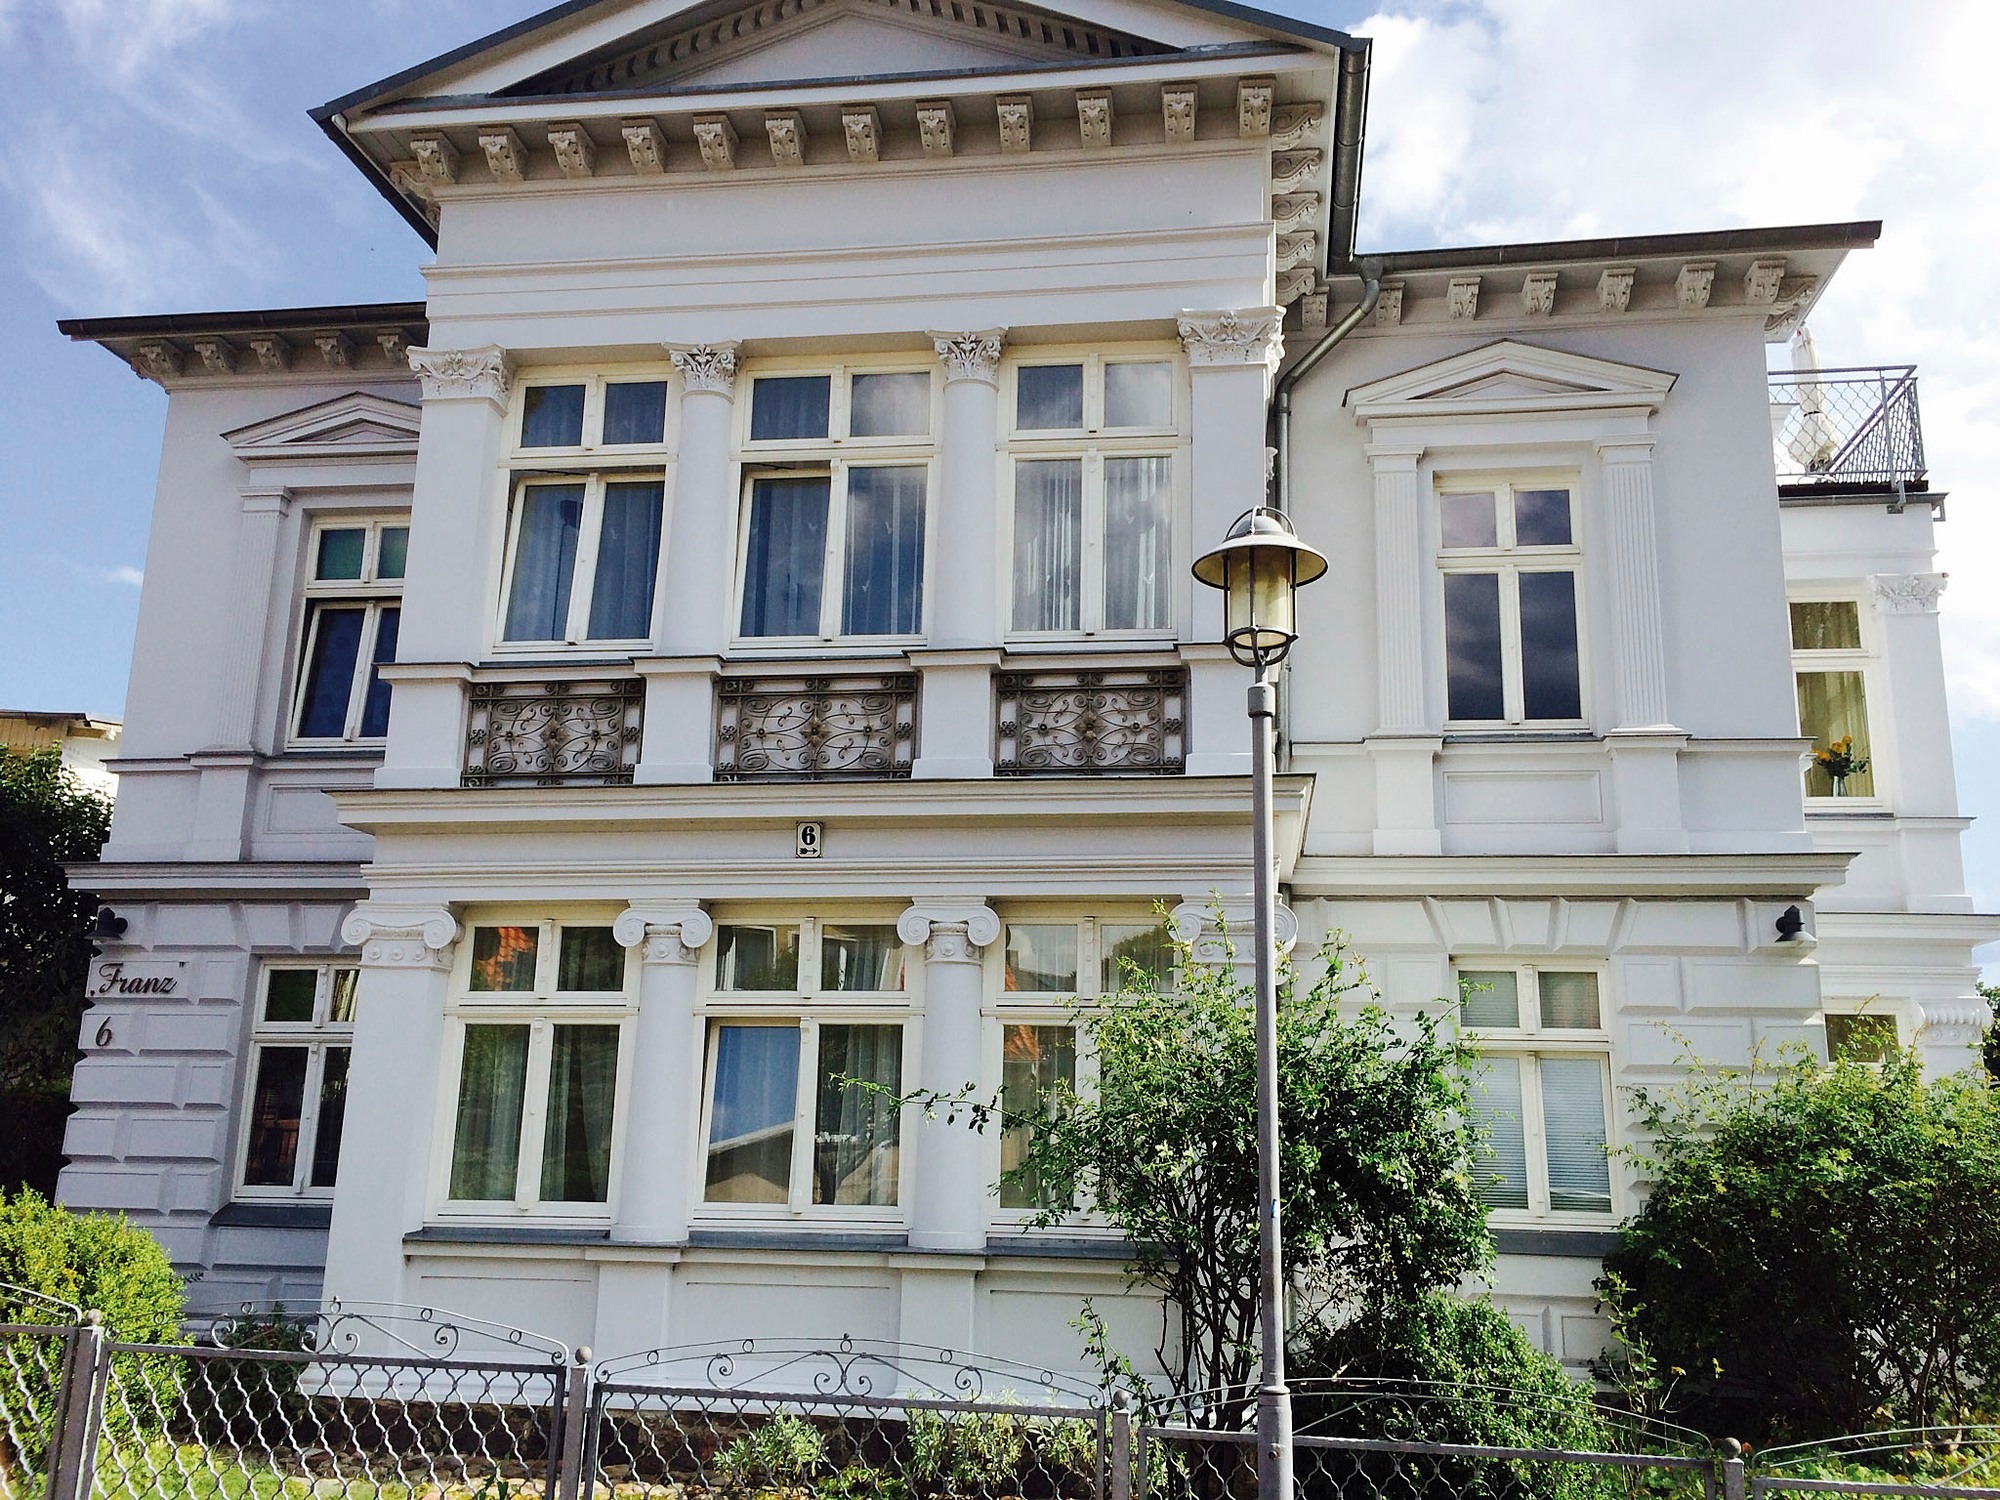 Villa Franz - Seestern Ferienwohnung in Heringsdorf Ostseebad